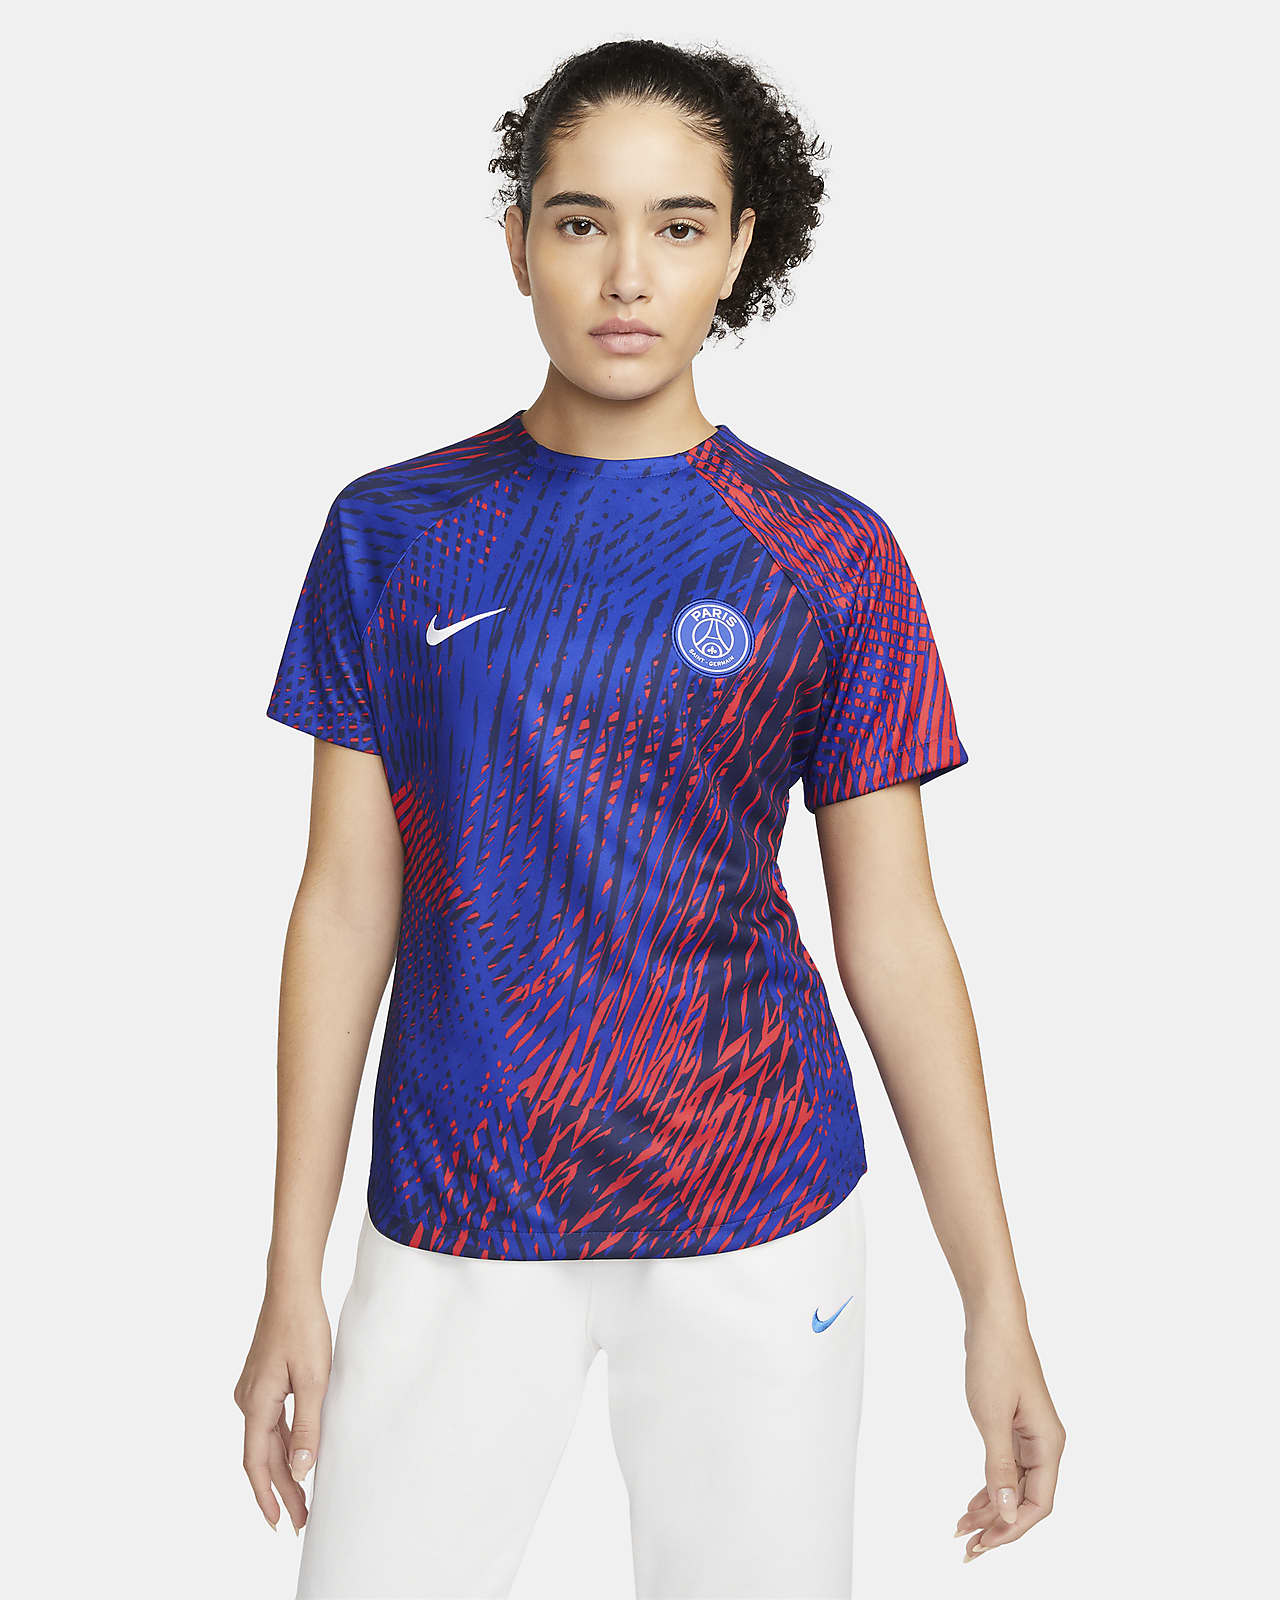 Paris Saint-Germain x Jordan Crew T-Shirt - Royal Blue - Womens